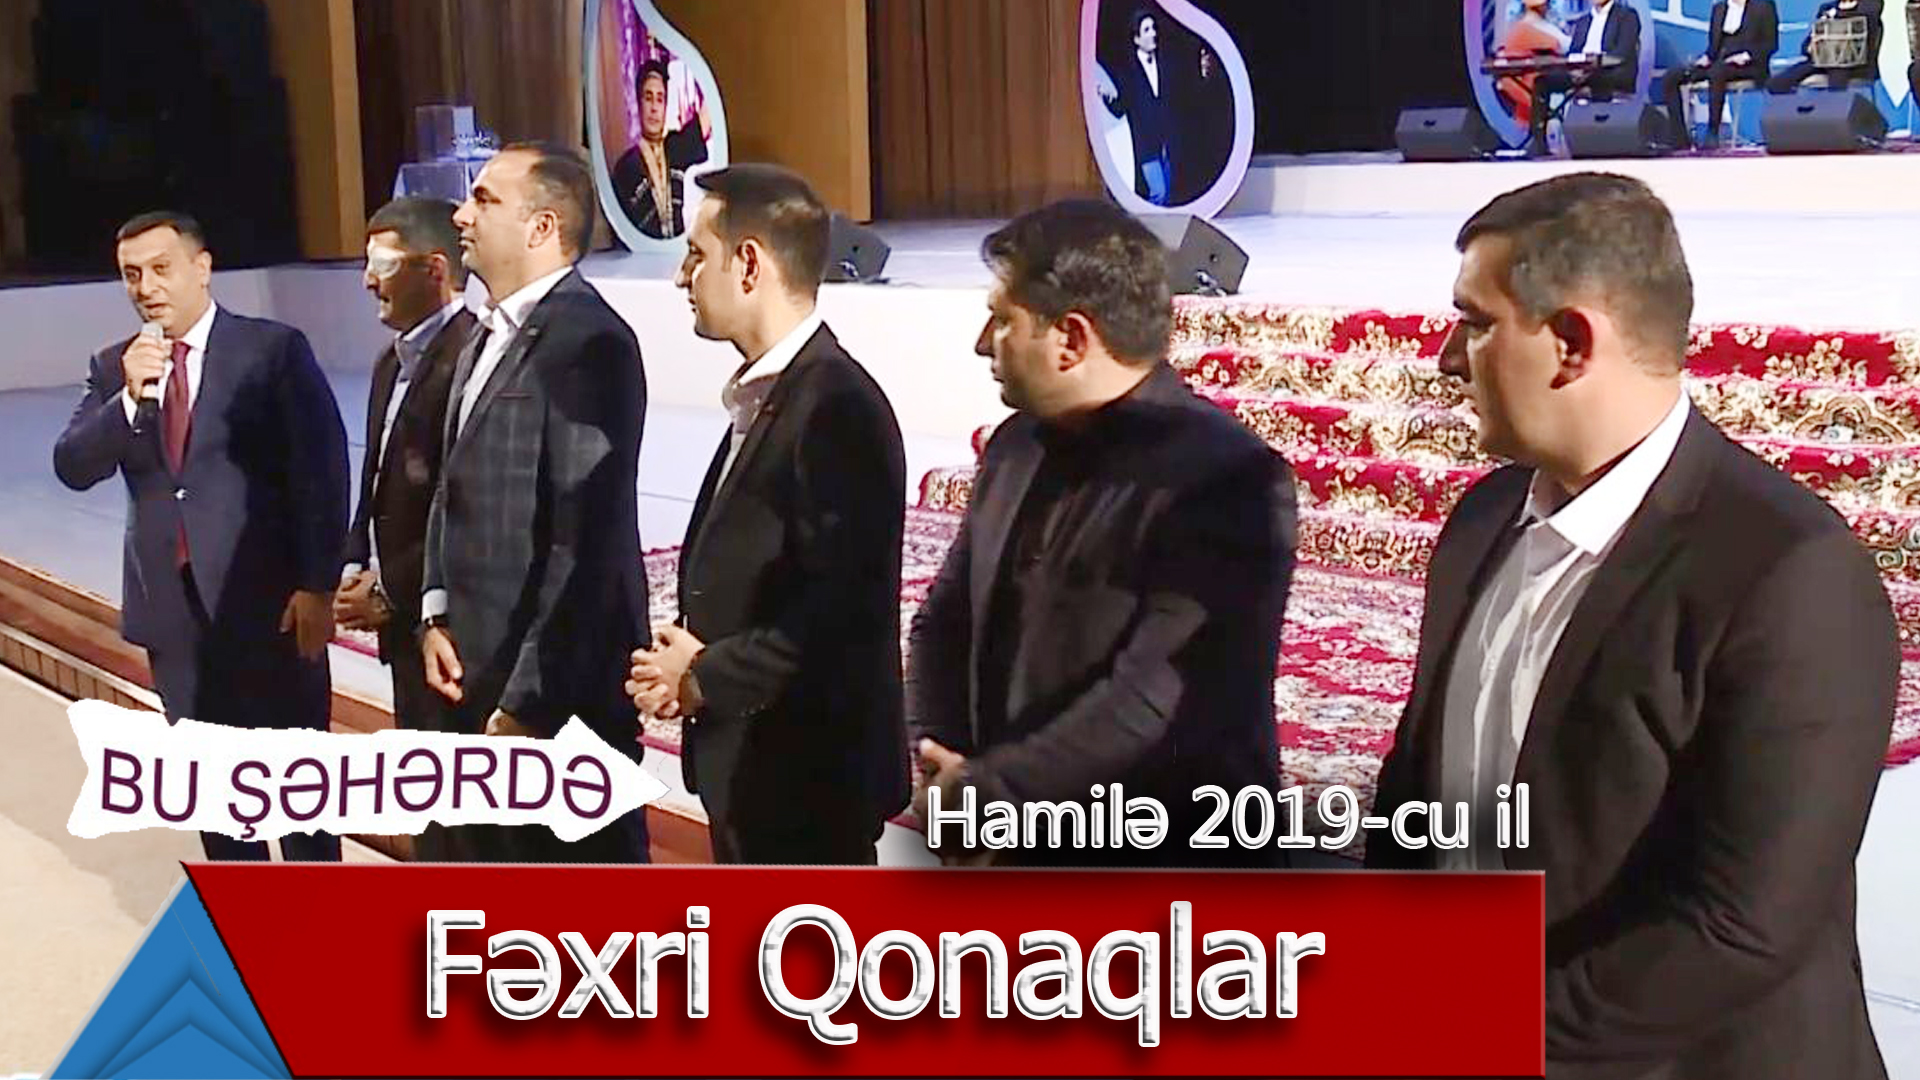 Bu Şəhərdə - Fexri qonaqlar (Hamile konserti, 2019)